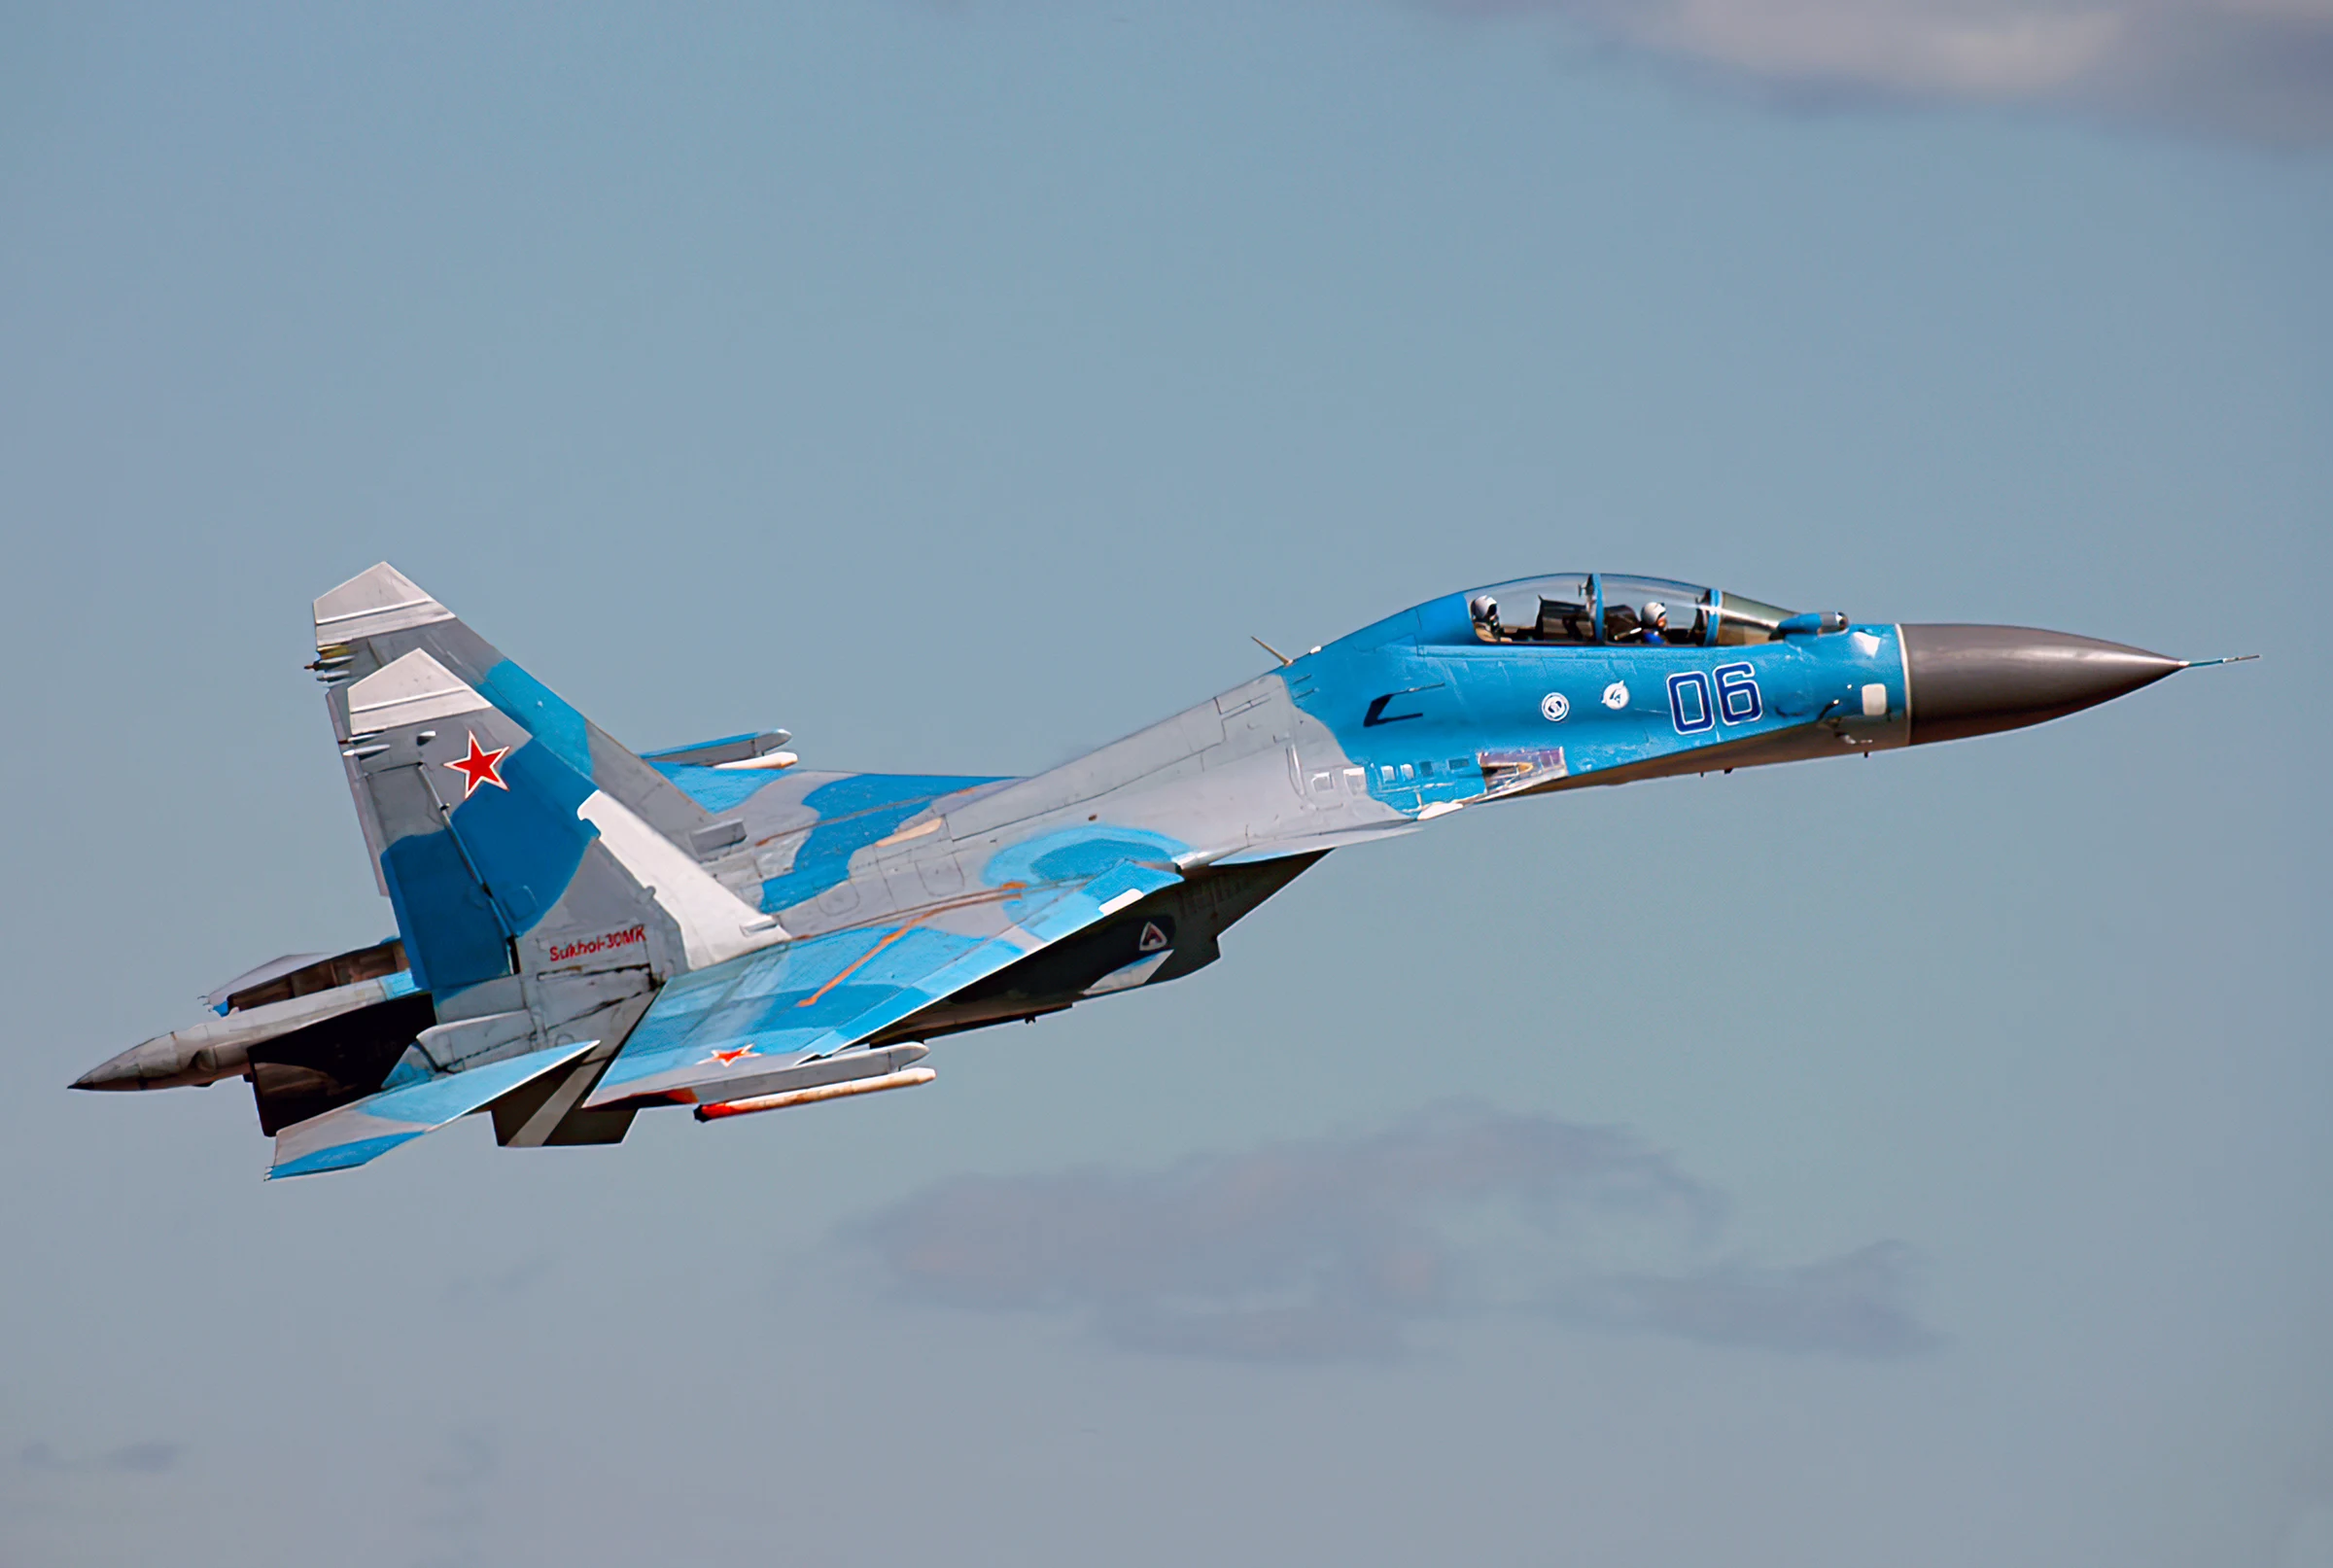 Ukraine tried to attack Russian Su-30 aircraft in the Black Sea